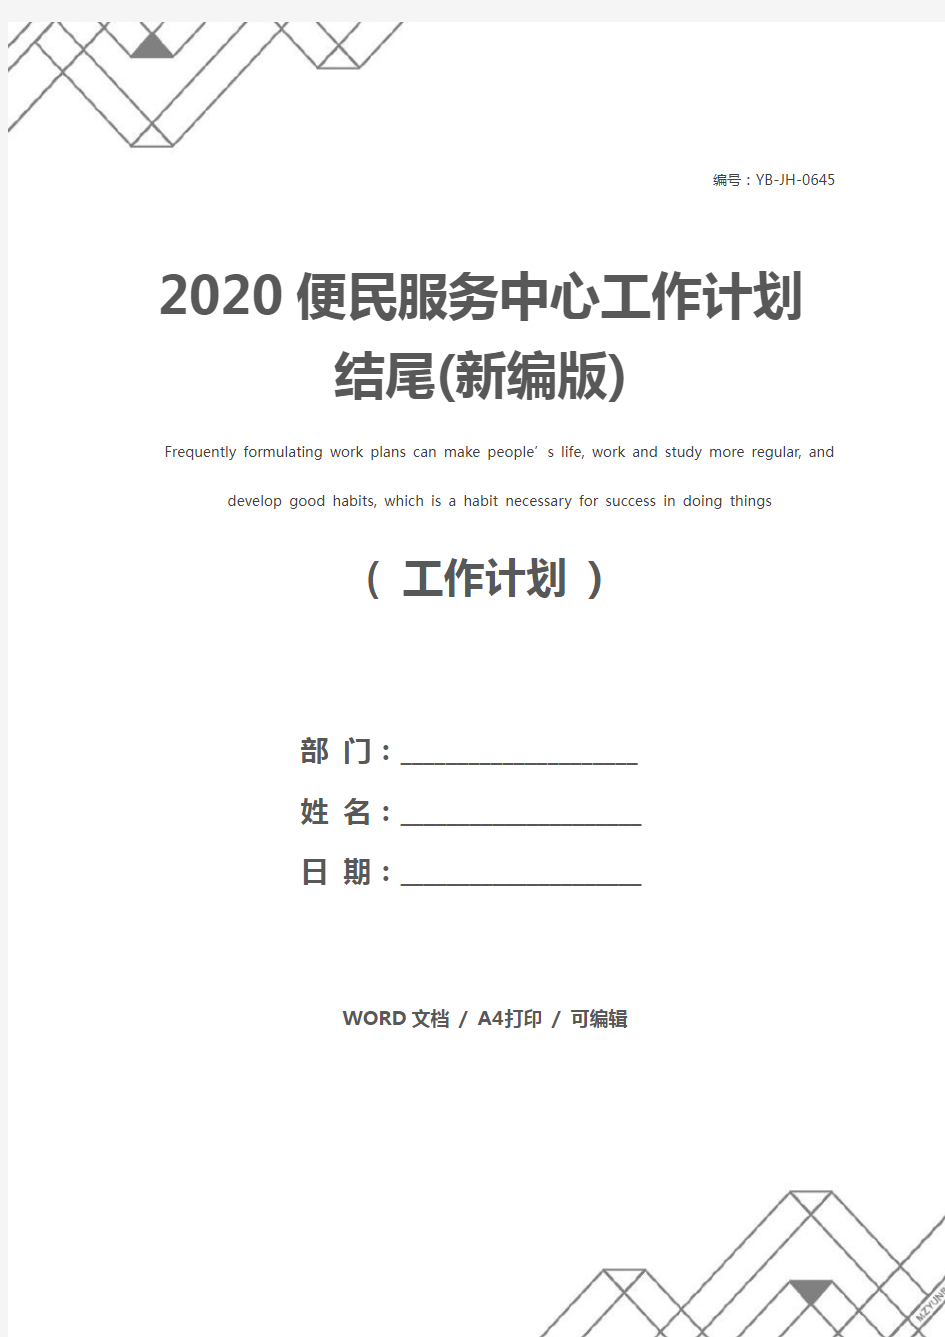 2020便民服务中心工作计划结尾(新编版)